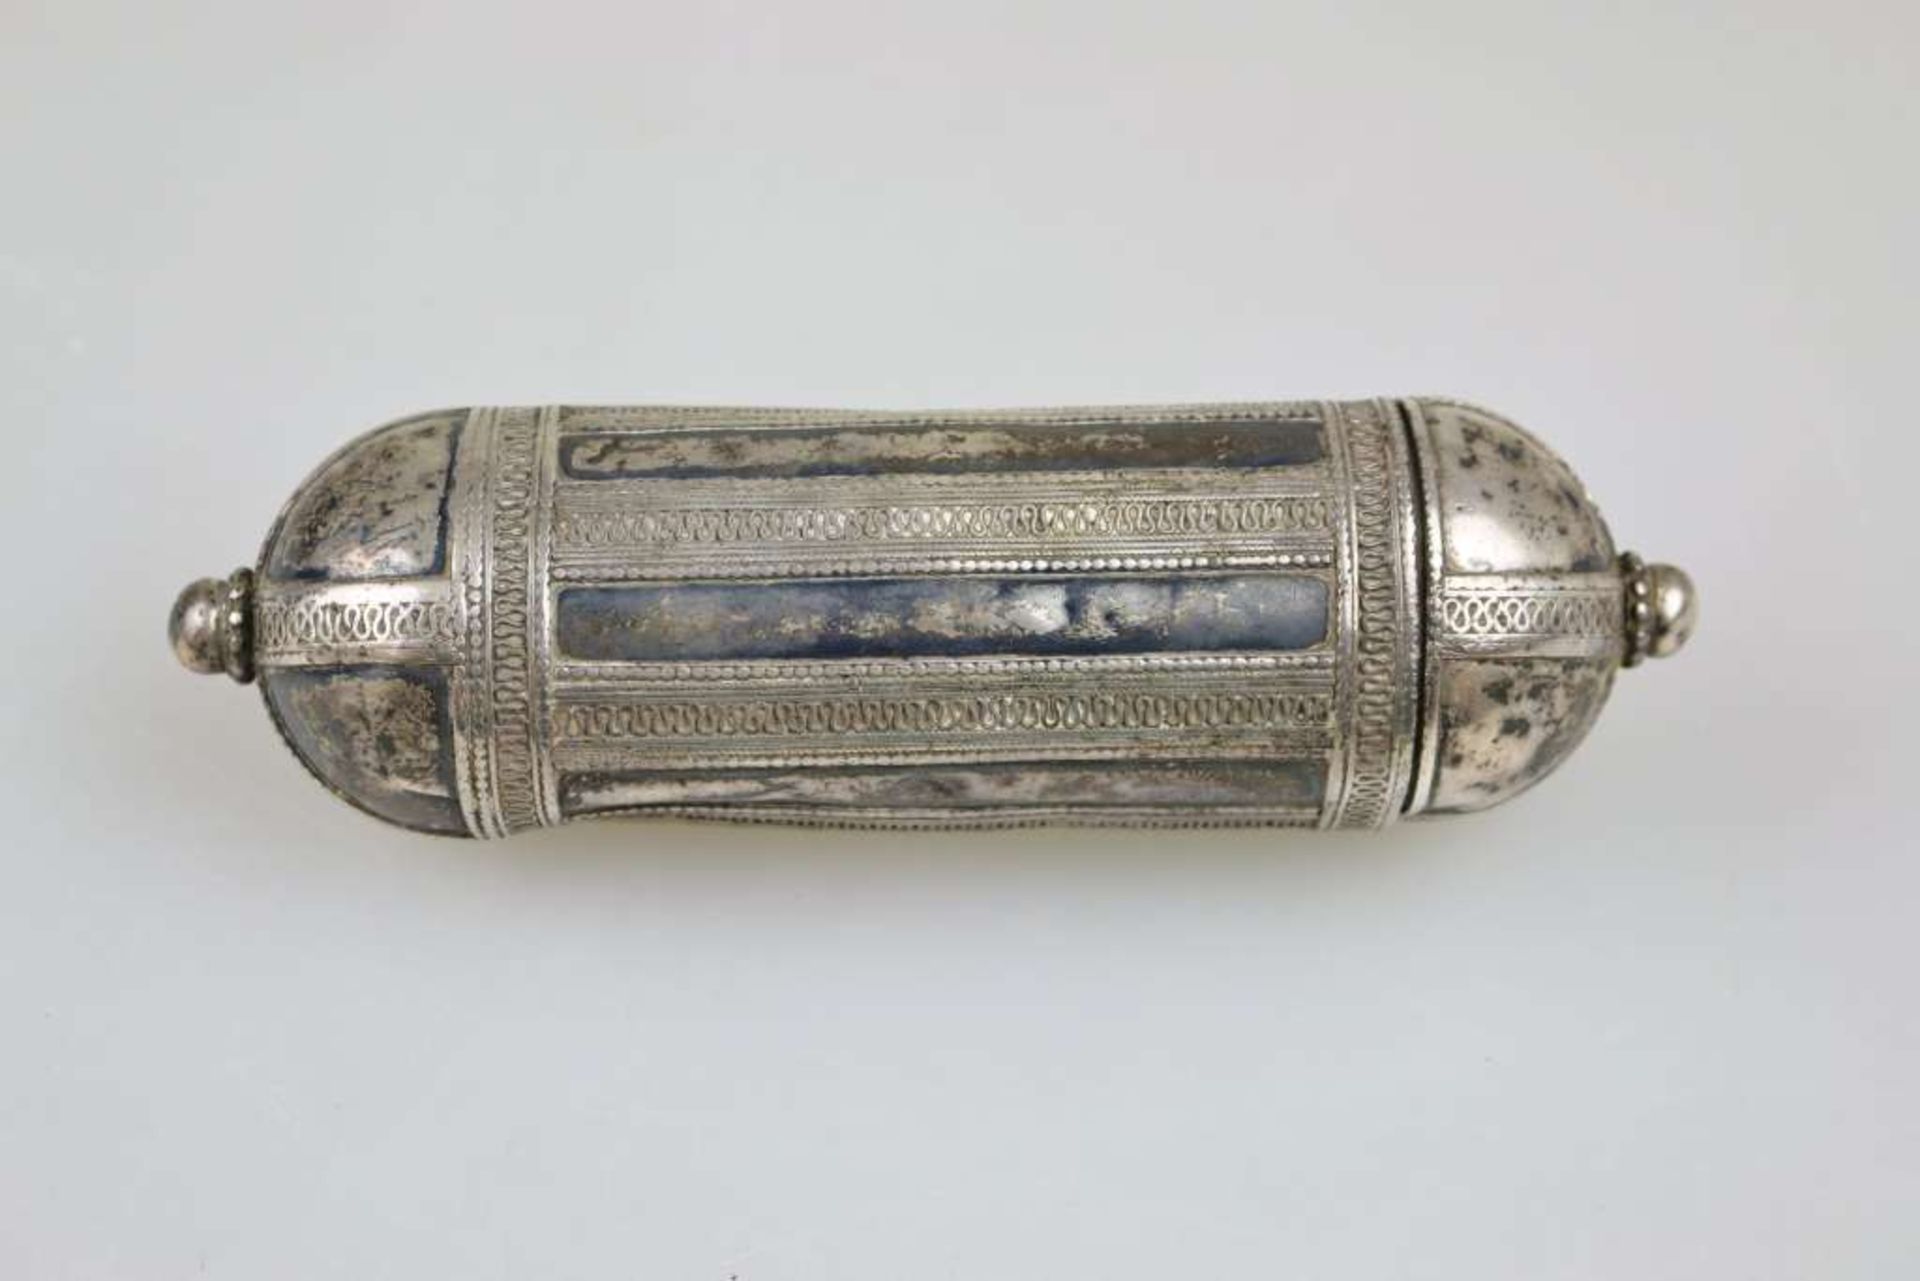 Amulettbehälter, wohl Jemen 19./20. Jh., Silber, zylindrischer Korpus, verziert, L.: ca. 17 cm, - Bild 3 aus 4